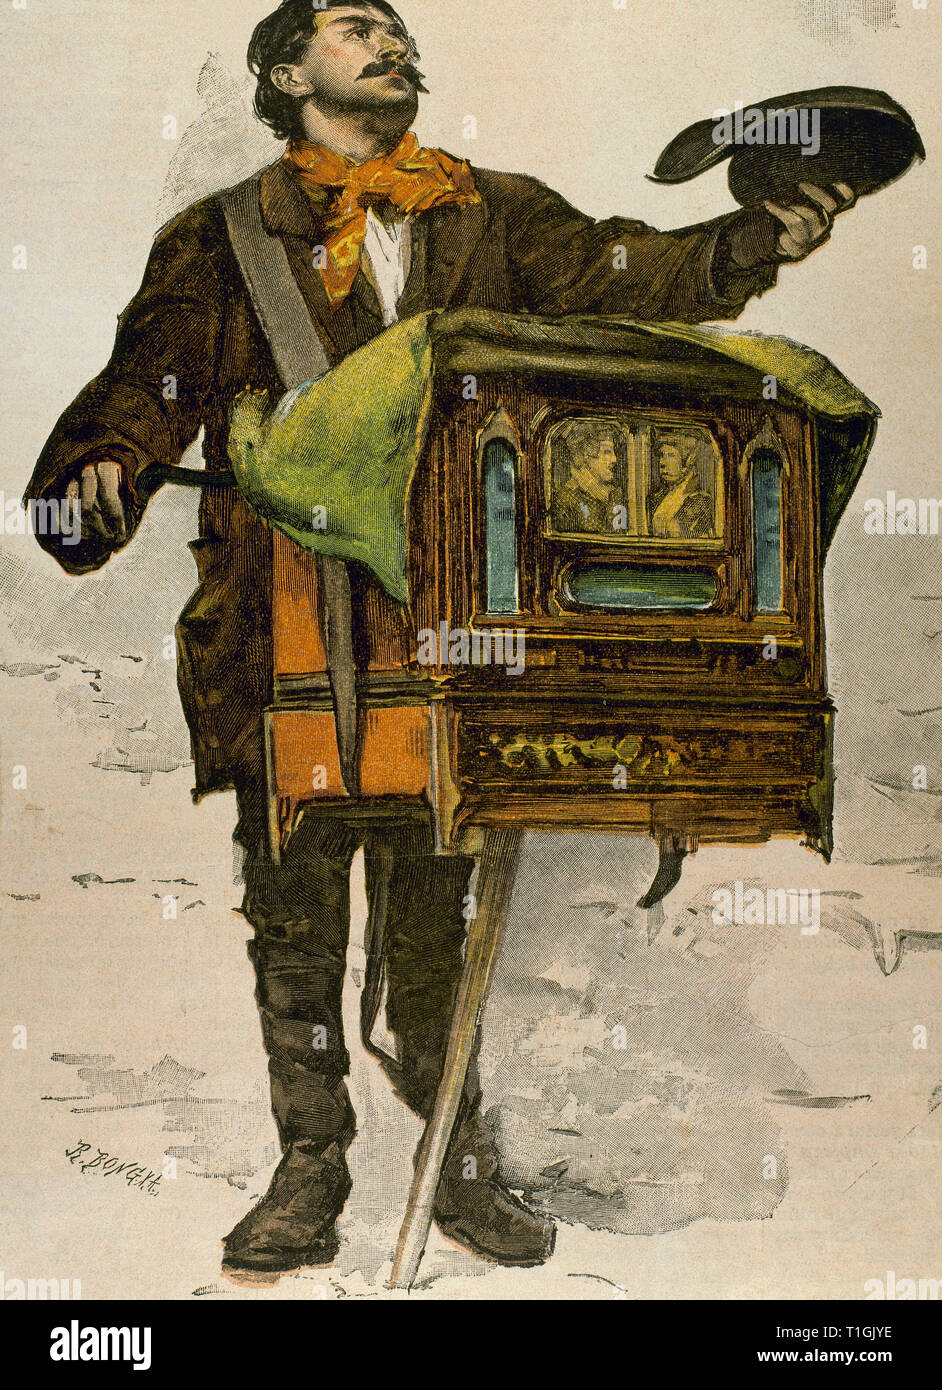 Le joueur d'orgue. Aquarelle de Stein. Gravure de R. Bong, 1894. Chromolitography. Banque D'Images